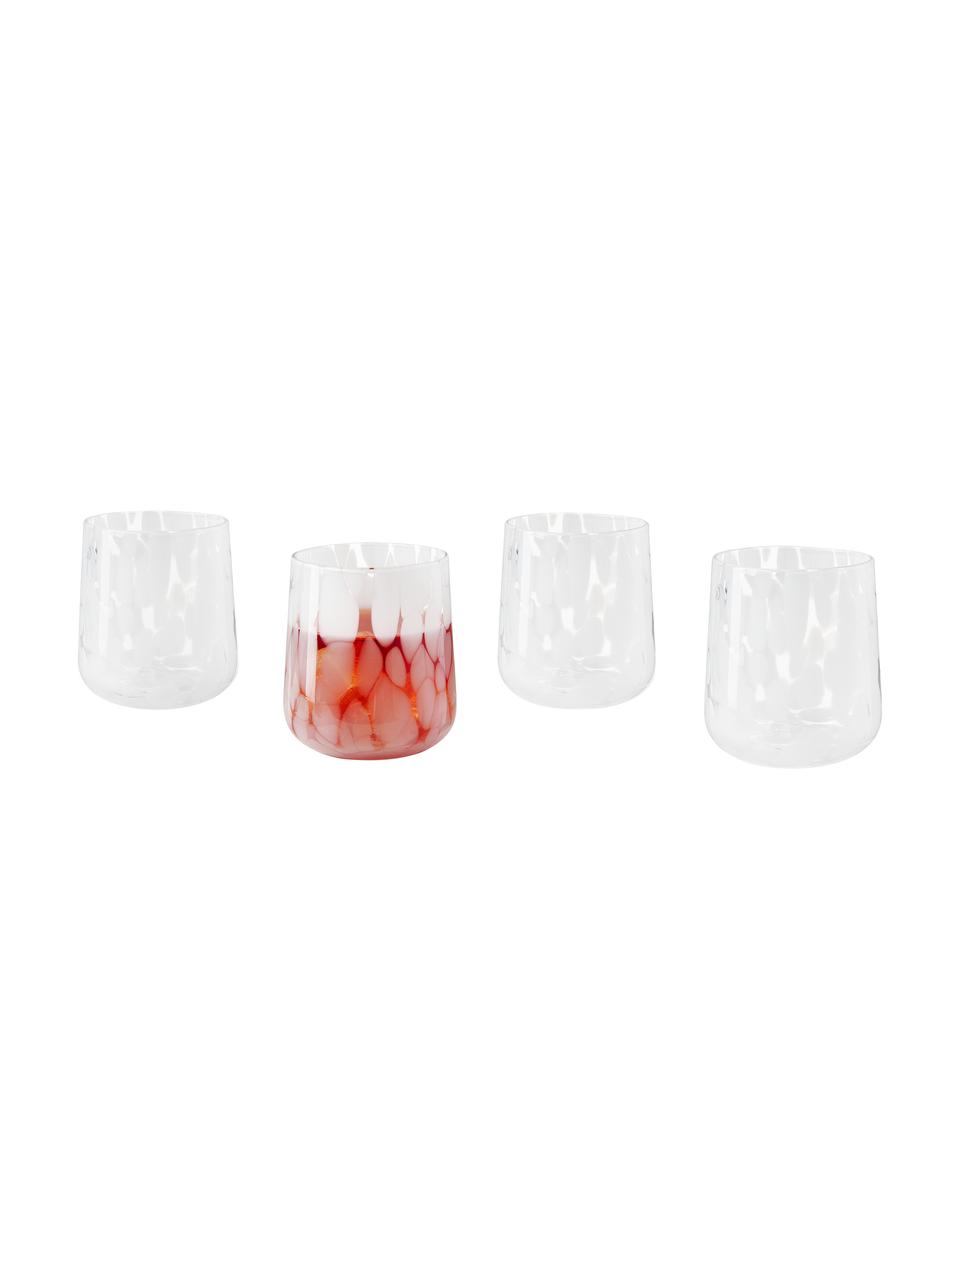 Vasos artesanales estampados Oakley, 4 uds., Vidrio, Blanco, Ø 9 x Al 10 cm, 370 ml